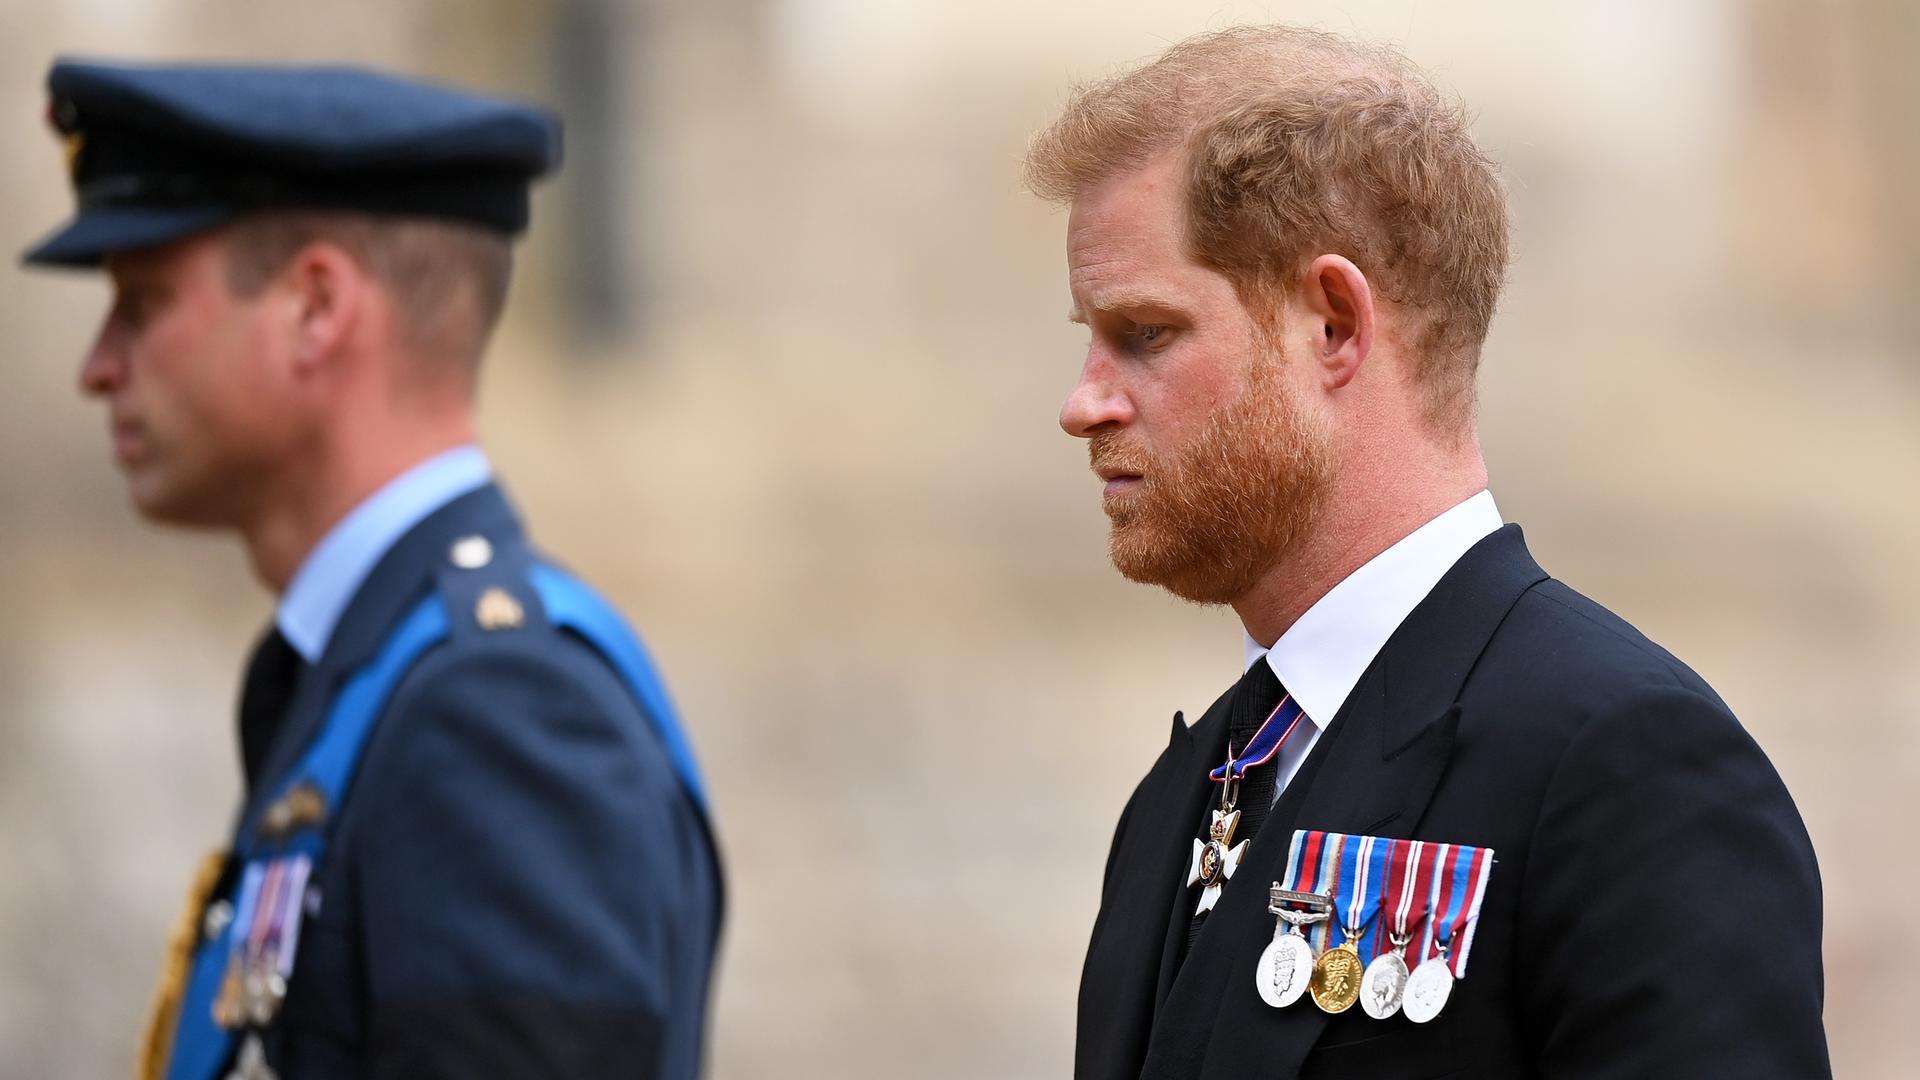 Prince William, Prince of Wales und Prince Harry, Duke of Sussex bei der Beerdigung von Queen Elizabeth II am 19. September 2022 in Windsor, England.